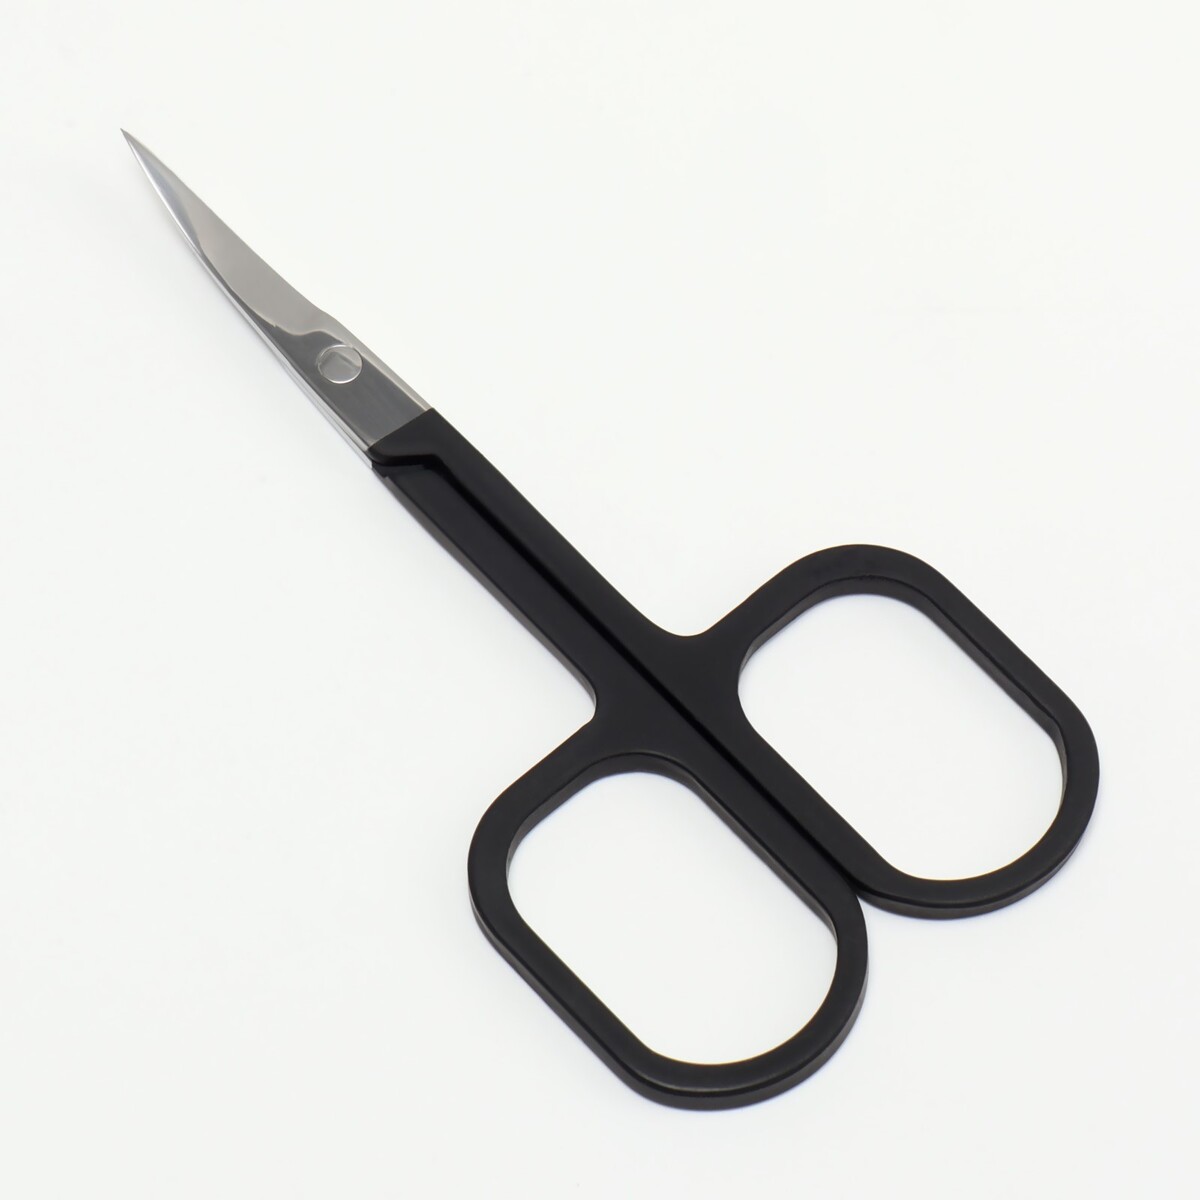 Ножницы маникюрные, узкие, загнутые, с прорезиненными ручками, 9 см, цвет серебристый/черный ножницы маникюрные для кутикулы загнутые узкие 9 см серебристый